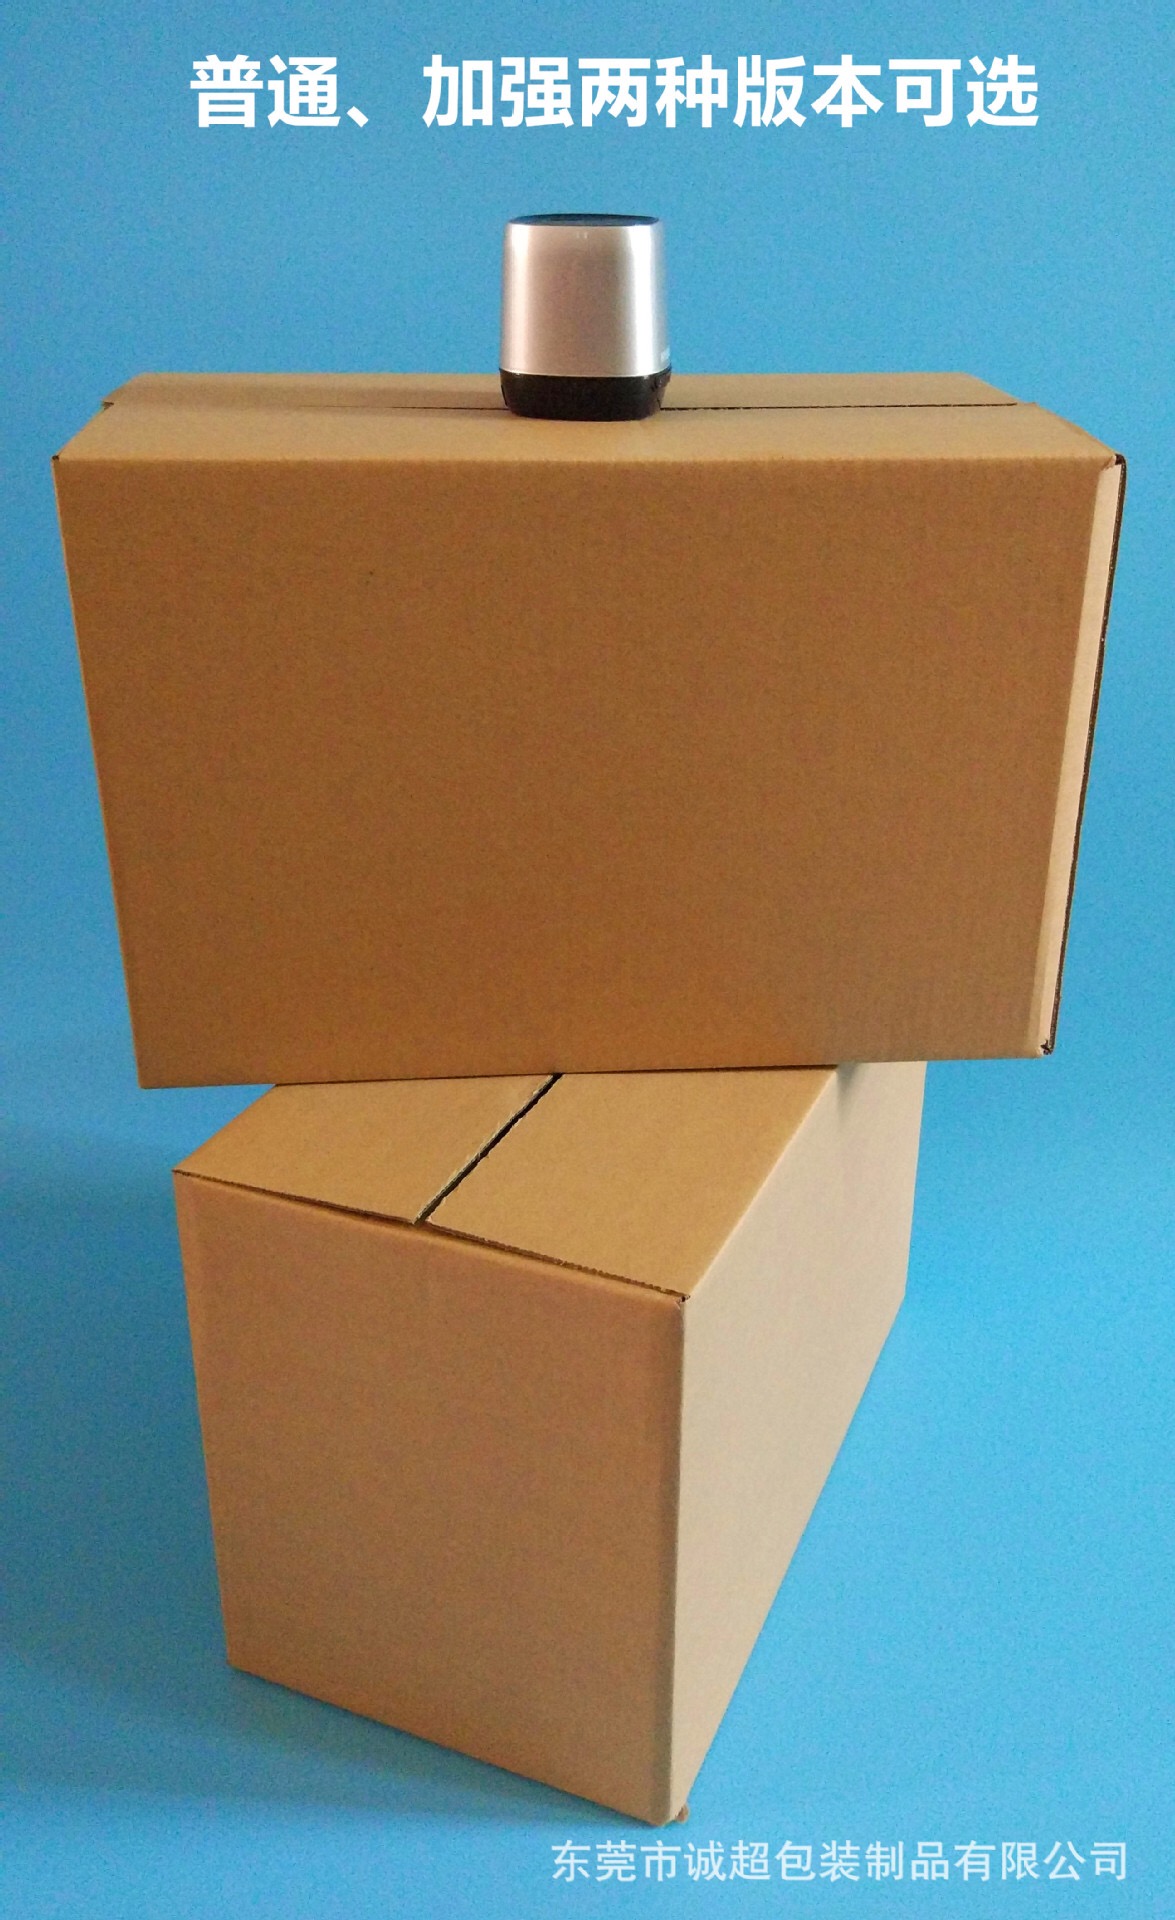 诚超包装 电商纸箱7号批发定做印刷，电商纸箱供应，邮政纸箱定制